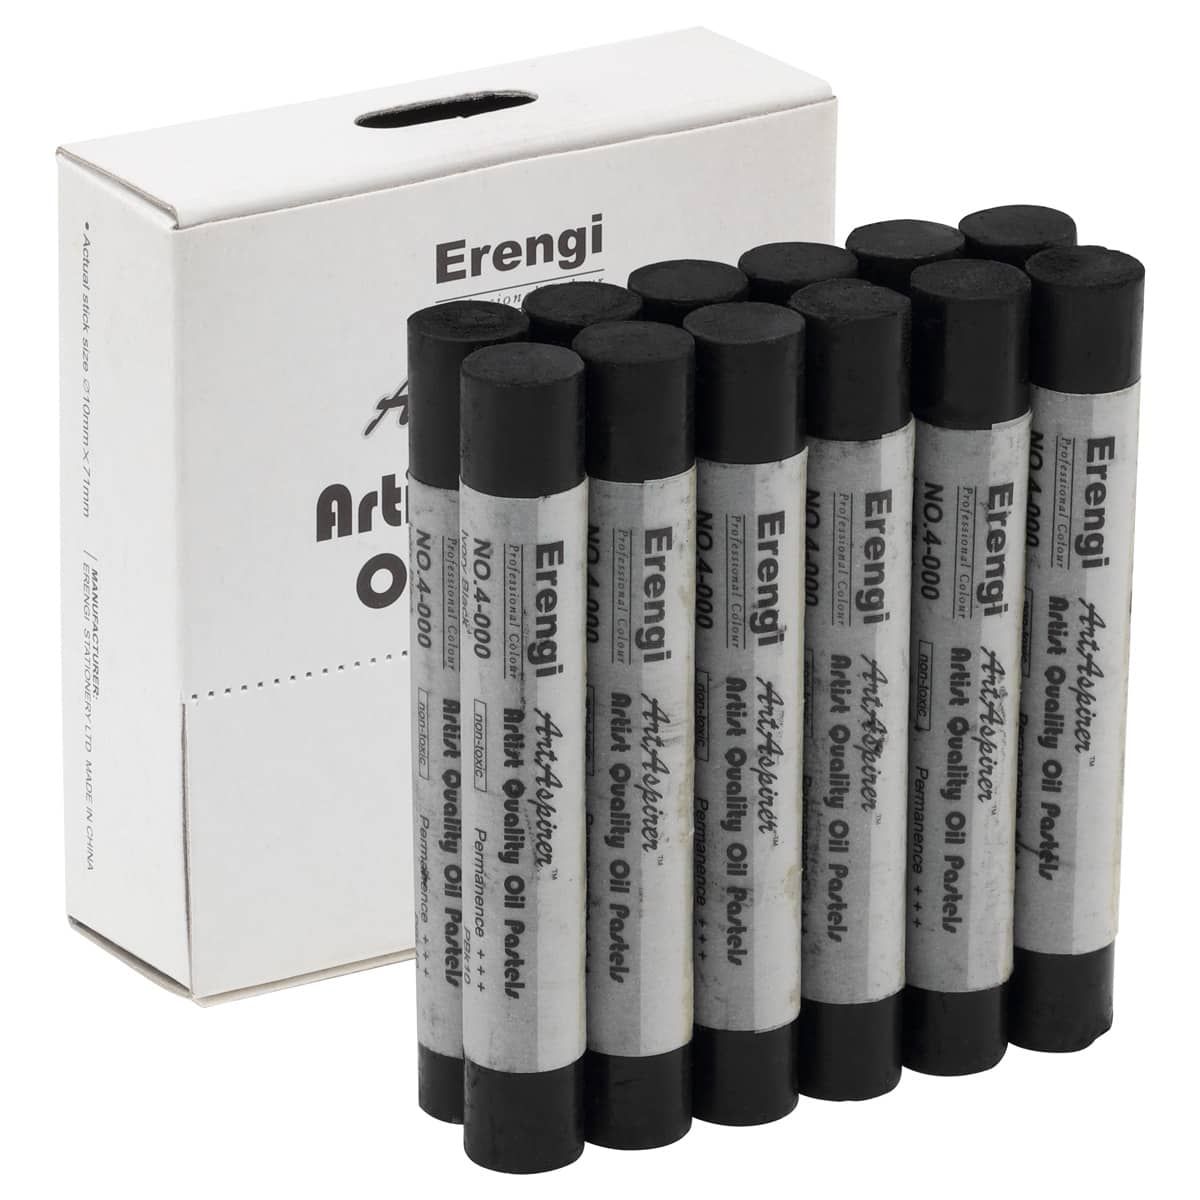 Erengi ArtAspirer Oil Pastel Box of 12 - Ivory Black (3)